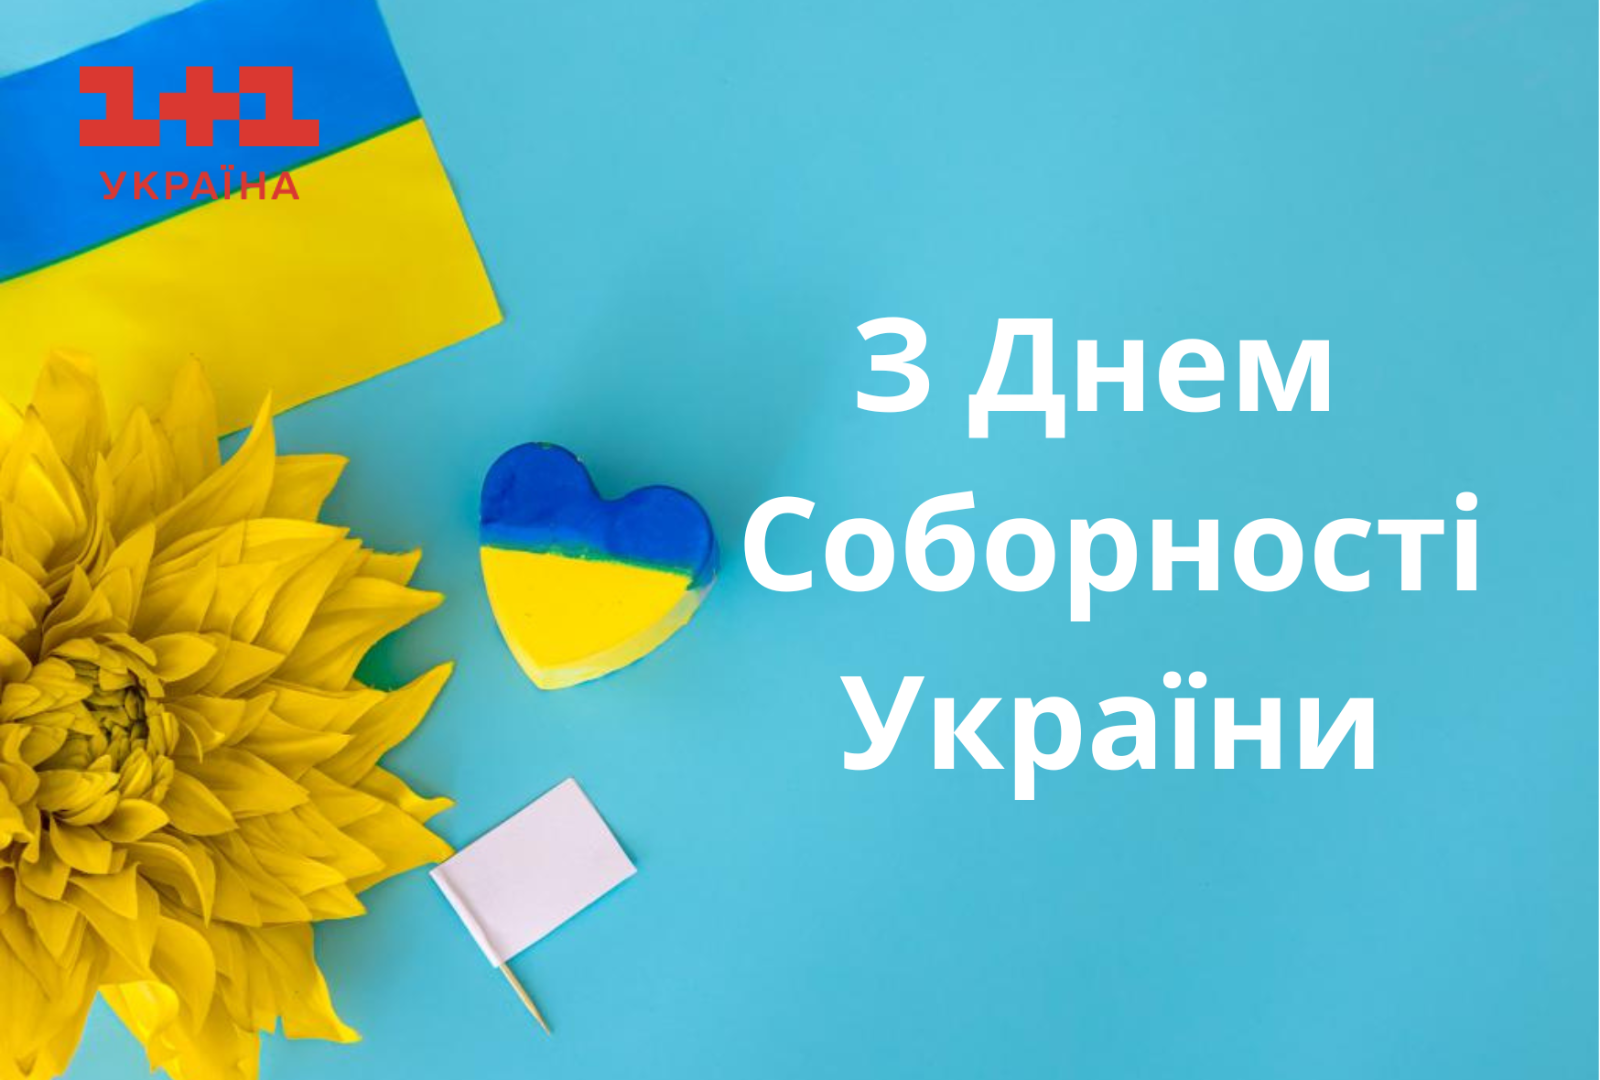 С Днем Соборности Украины поздравления